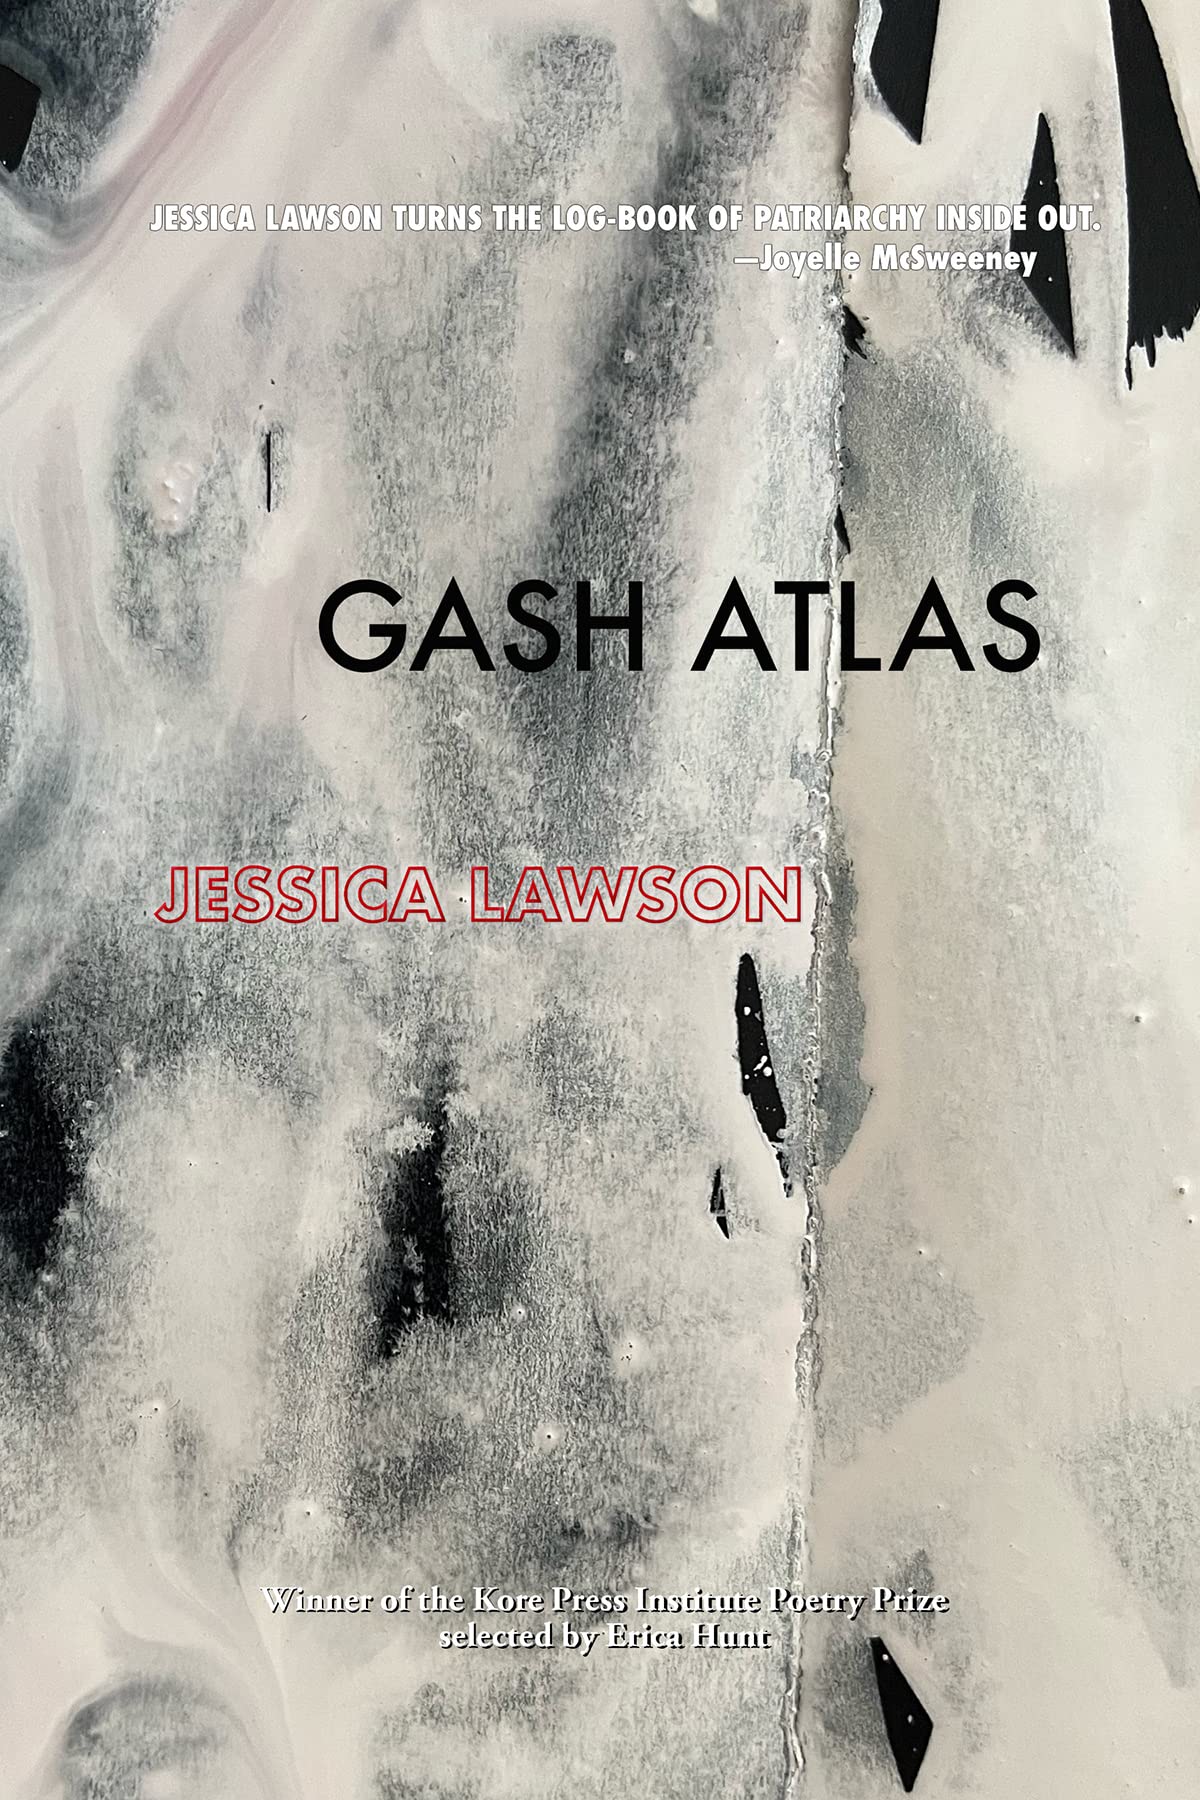 Gash Atlas, by Jessica Lawson